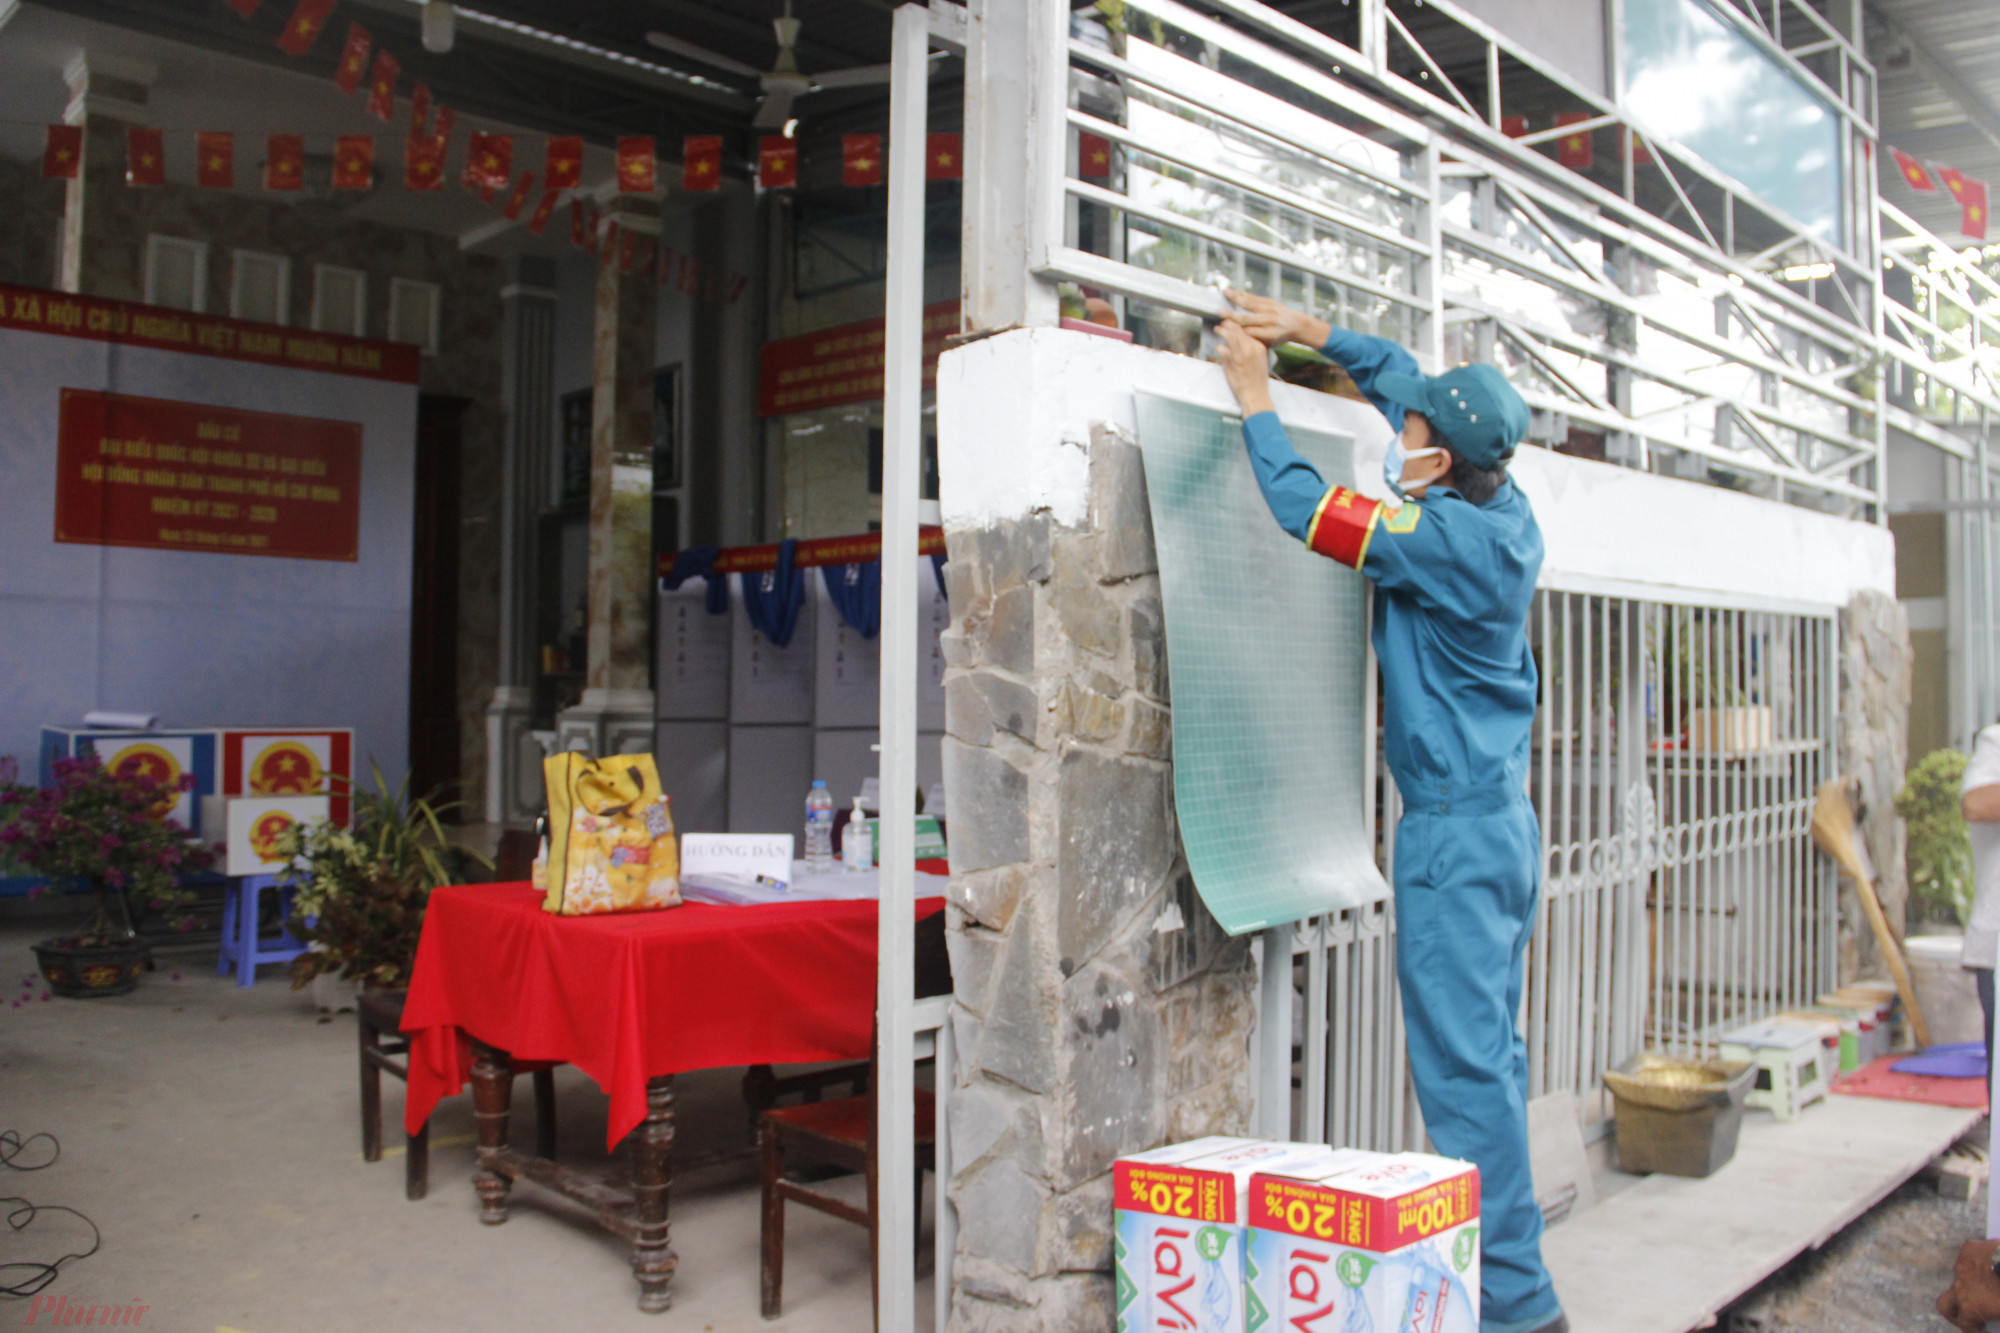 Chính quyền địa phương đang dọn vệ sinh, trang trí tại căn nhà số 12 đường Lê Tấn Bê, phường An Lạc, quận Bình Tân. Căn nhà này sẽ là điểm bỏ phiếu của cử tri 11 tổ dân phố thuộc phường An Lạc.